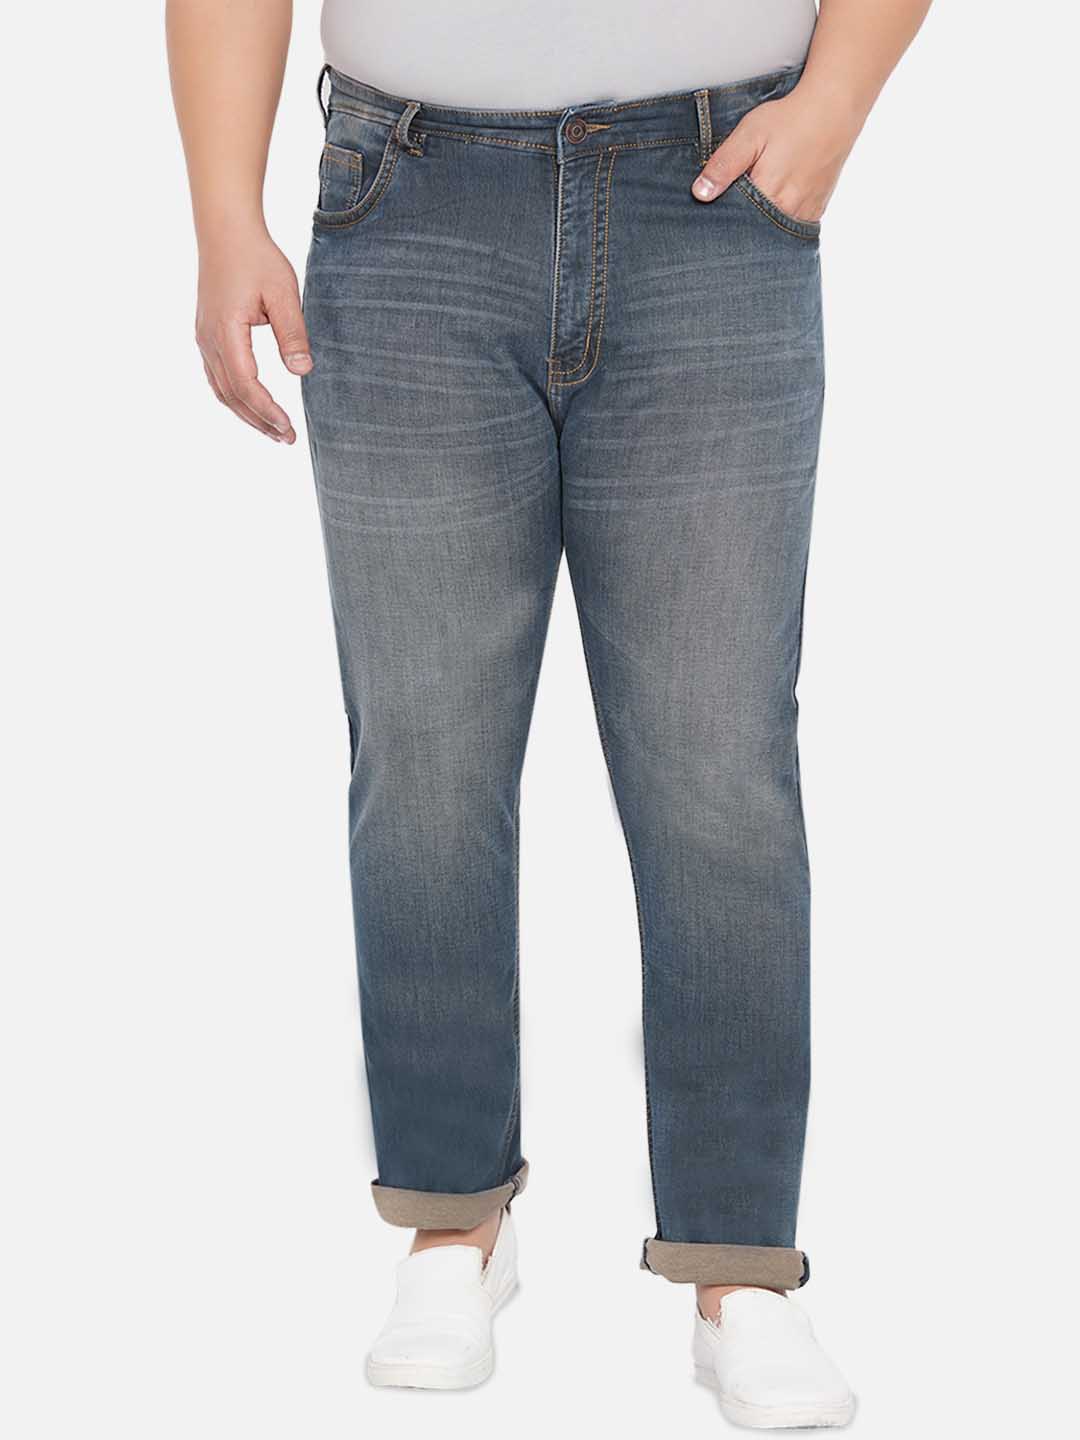 bottomwear/jeans/JPJ12232/jpj12232-6.jpg